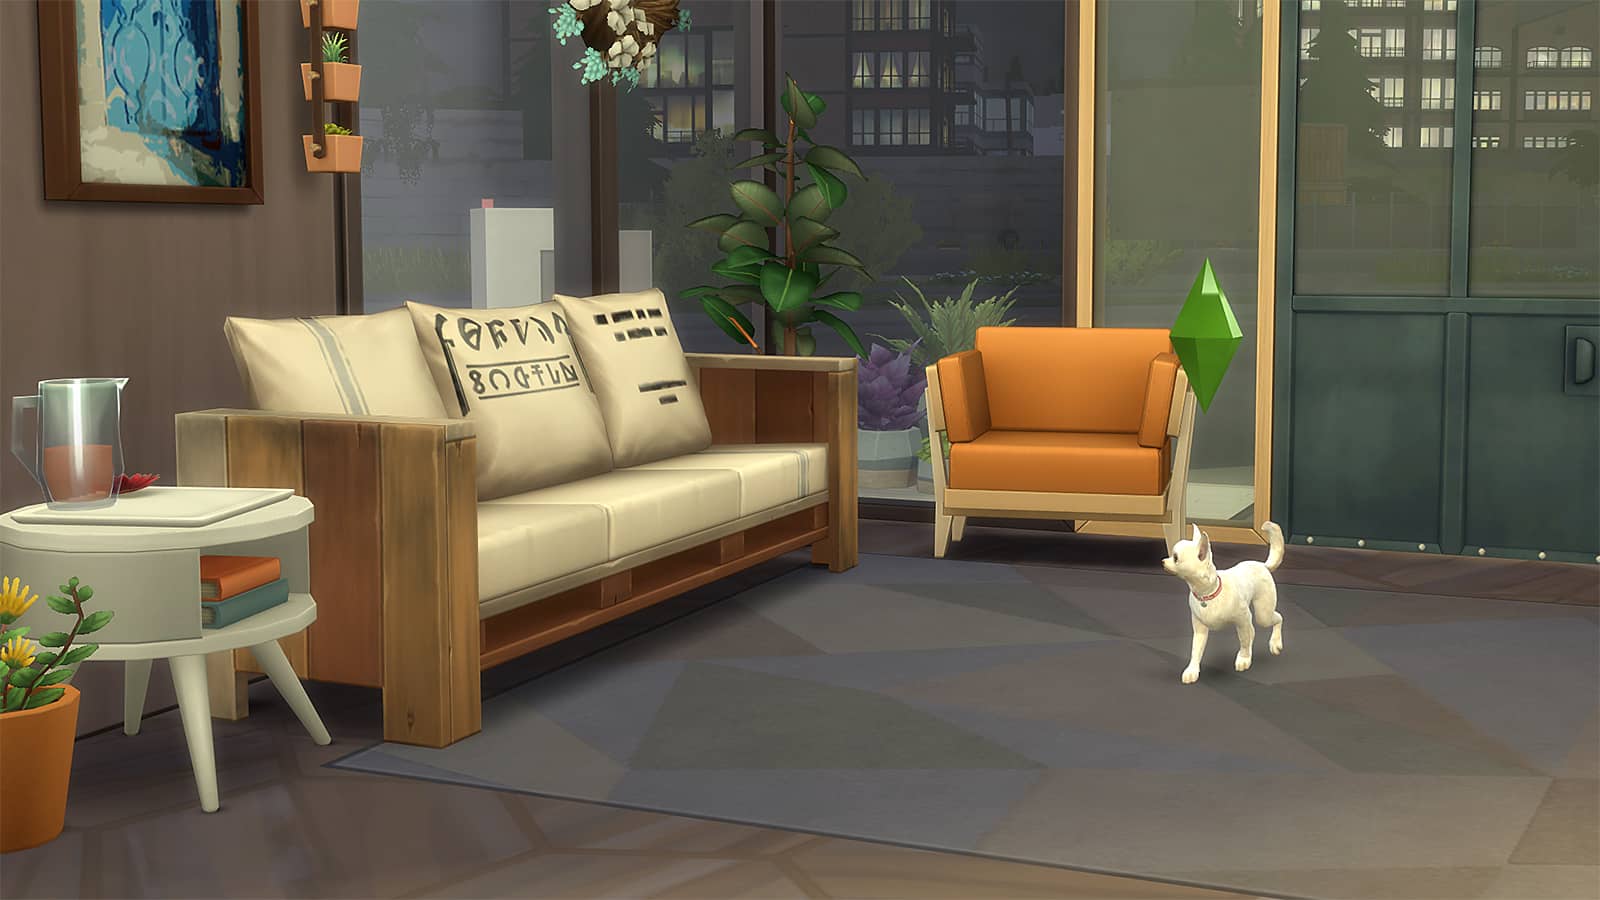 Sims 4'te oynanabilir evcil hayvan oyununun ekran görüntüsü